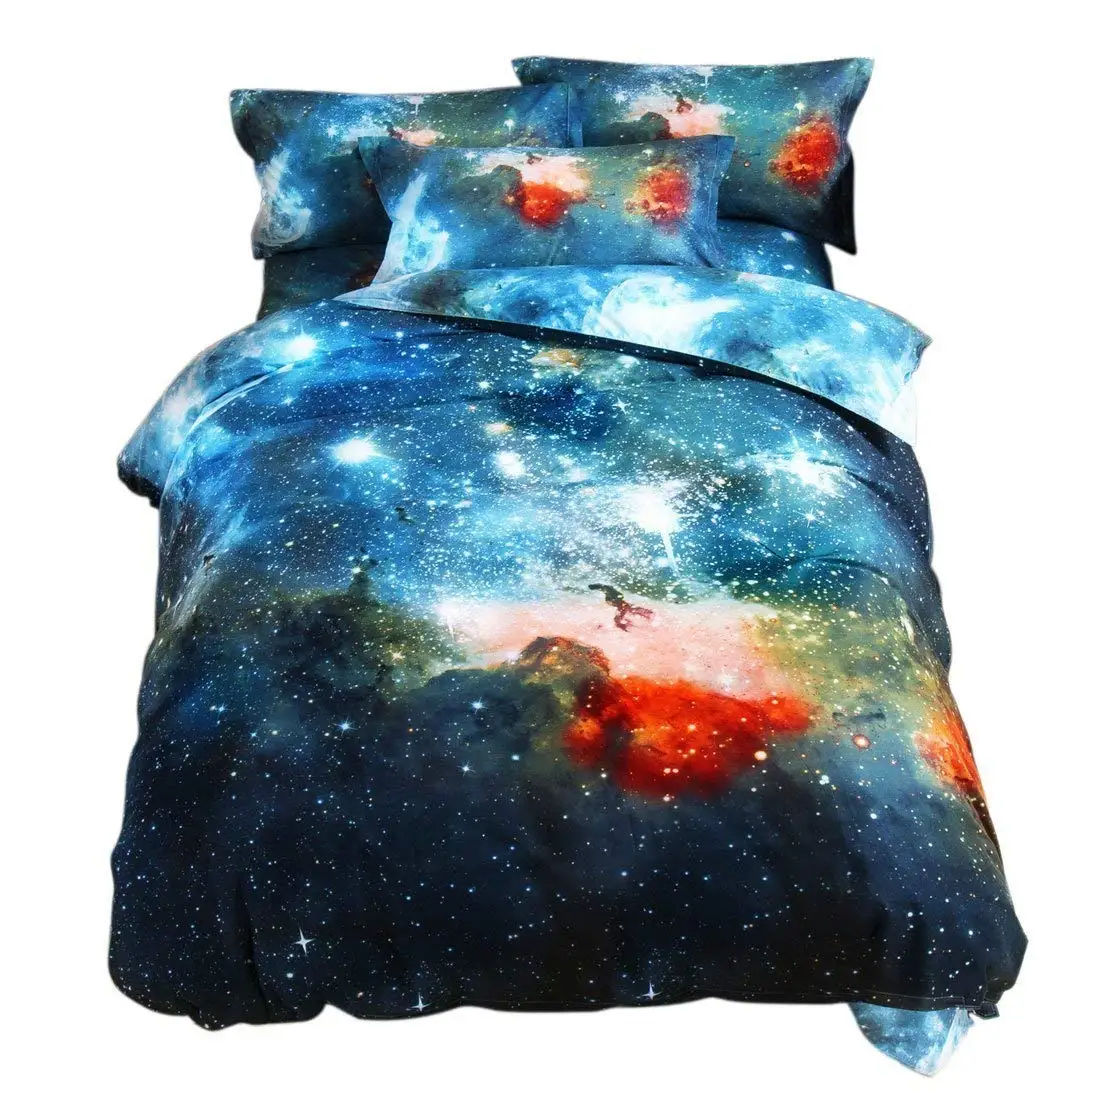 Постельное белье с принтом галактики 3d космического пространства Постельное белье Стёганое одеяло постельная Подушка постельное белье Полный queen Twin King Размеры 3/4 шт - Цвет: color4